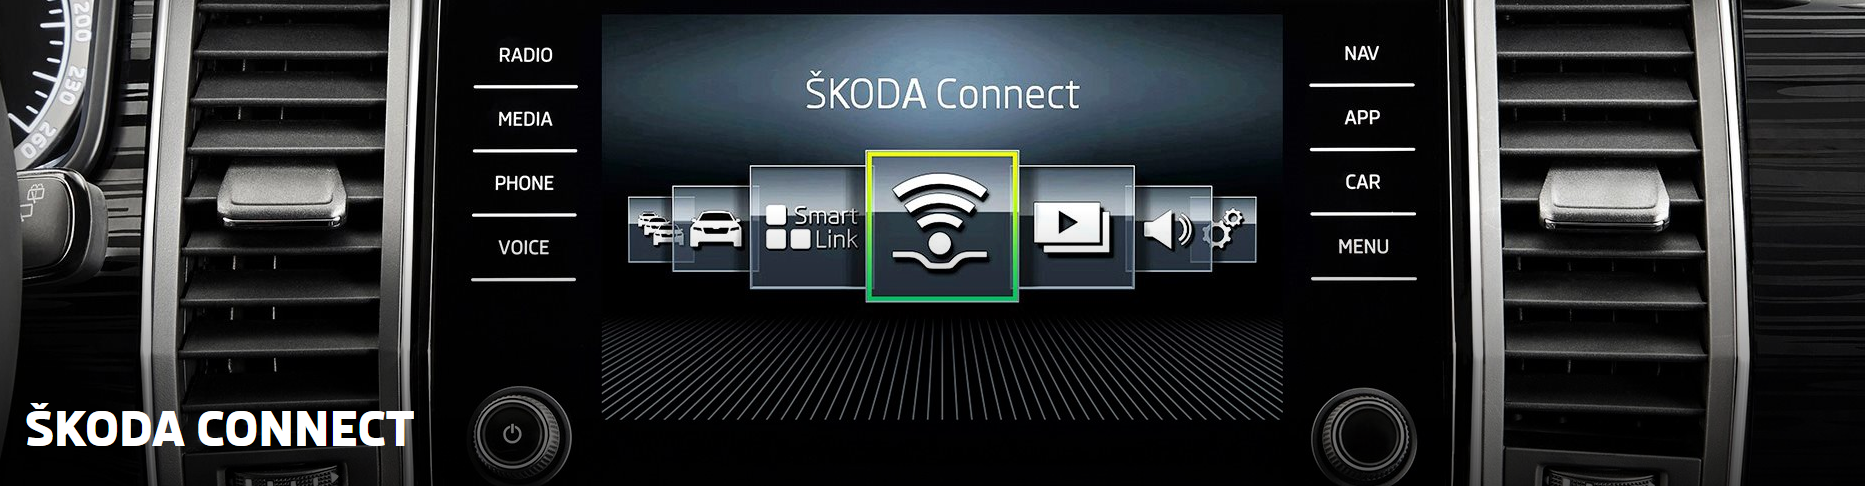 Skoda Connect und Smartlink von Skoda Bildquelle: skoda-auto,de